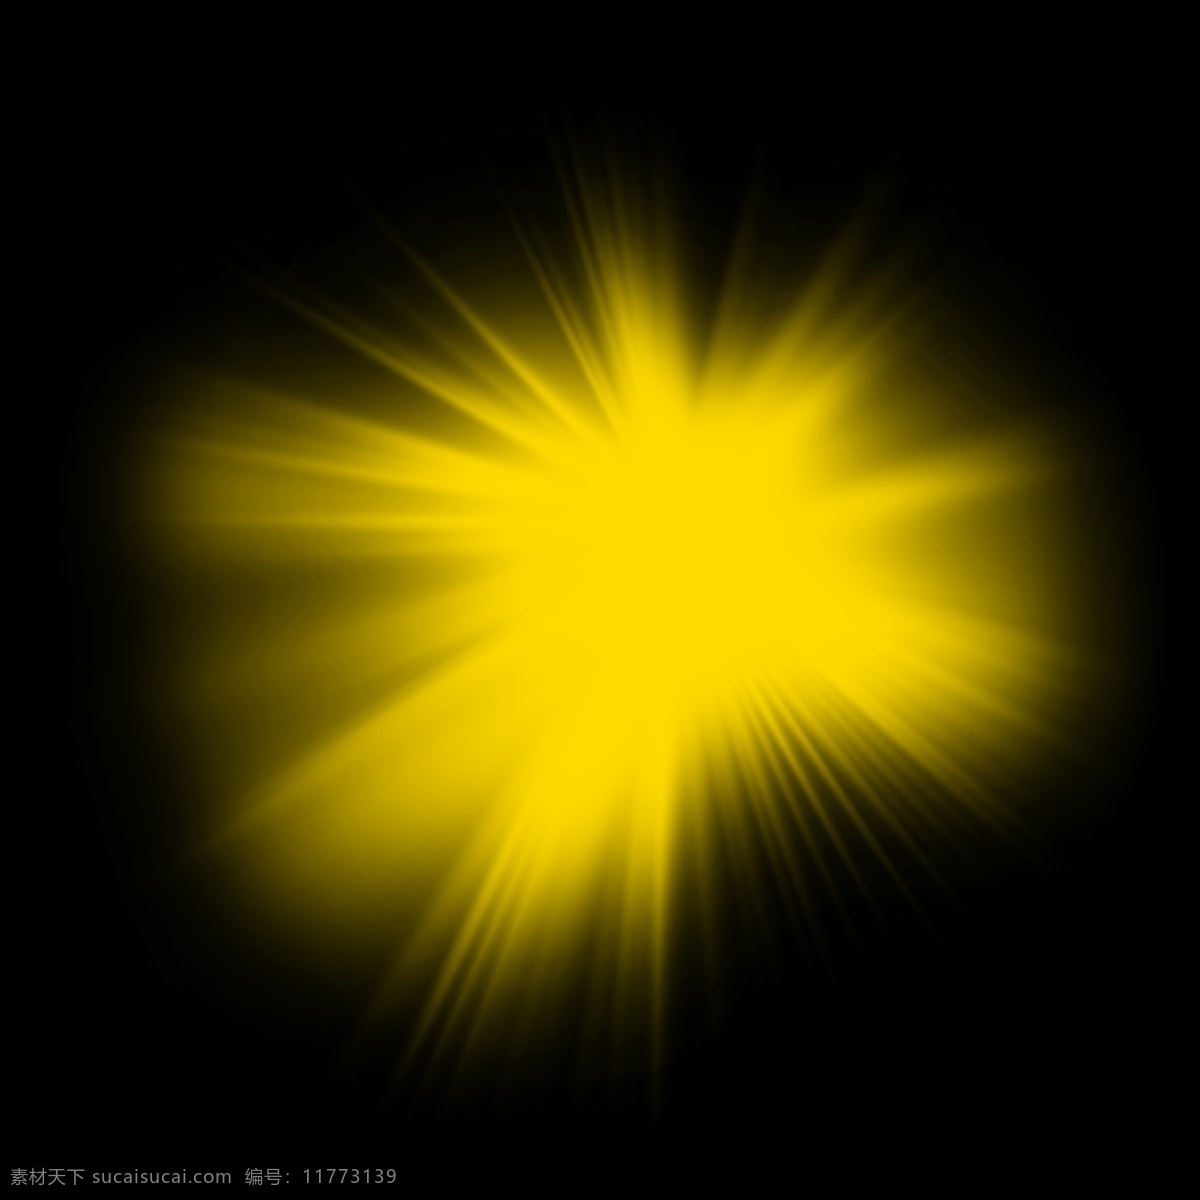 黄色光线图片 光线 功能饮料 光 射线 黄色线条 光芒四射 分层